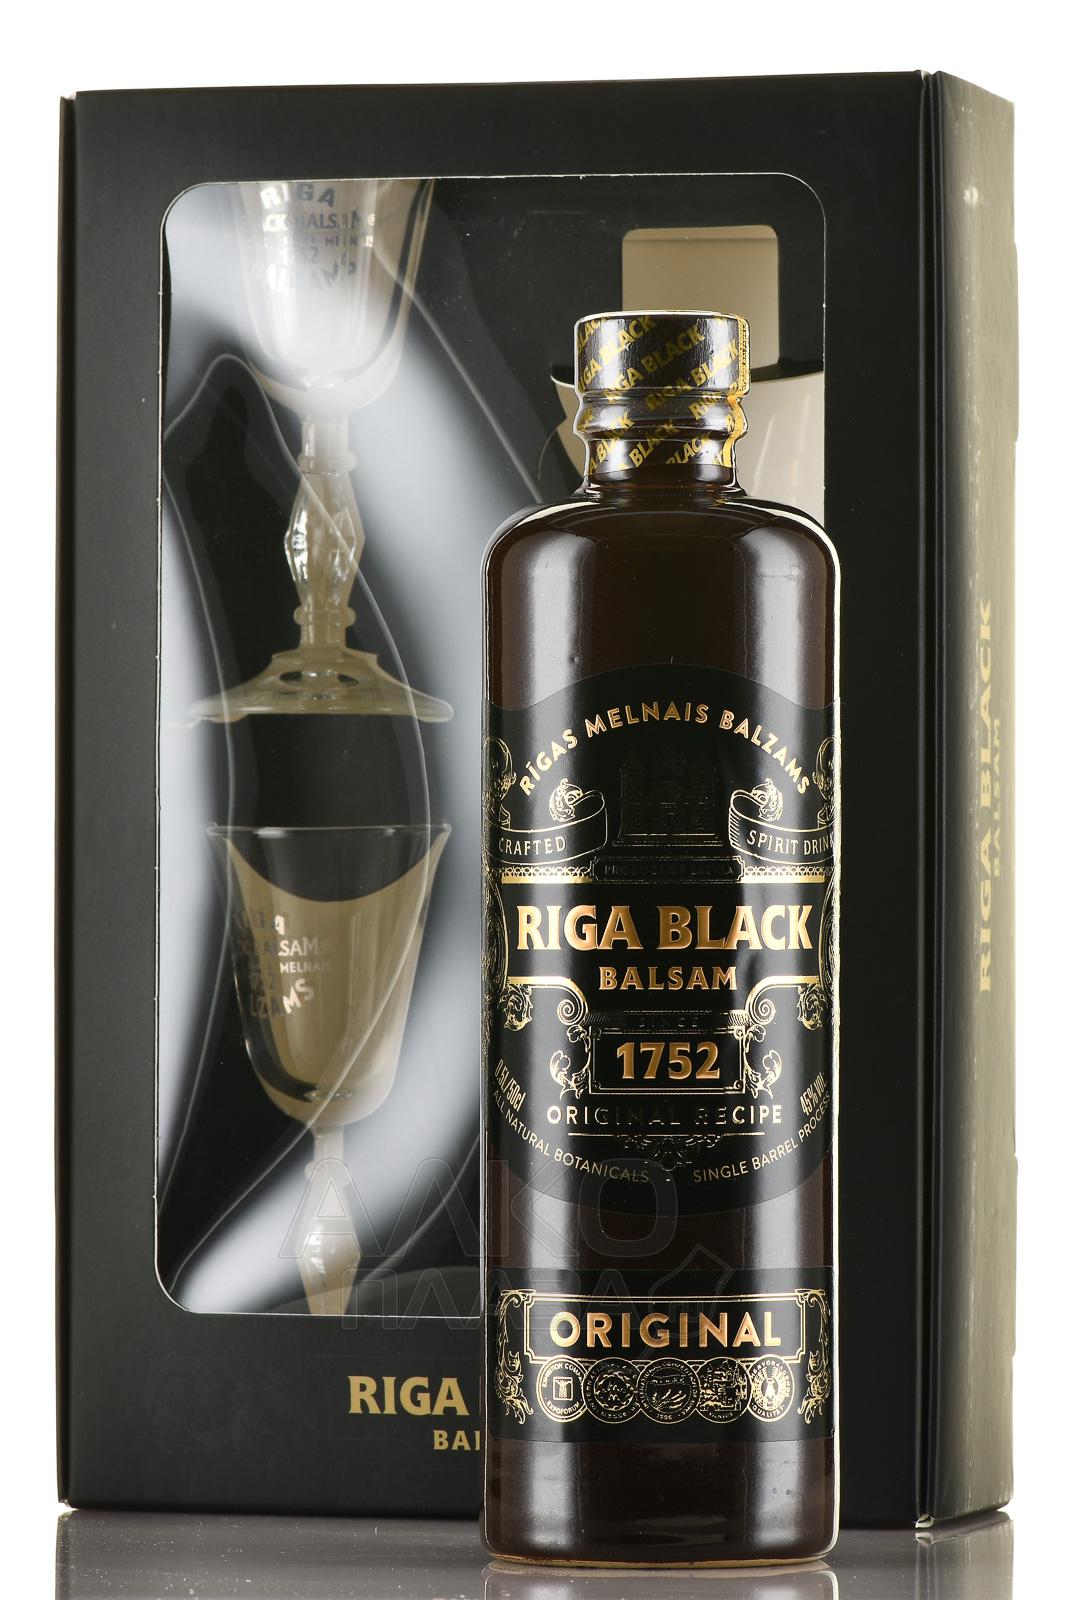 Бальзам 0.5 цена. Рижский черный оригинальный бальзам 0,5. Riga Black balsam 0.5. Бальзам Рижский черный оригинальный. Рижский бальзам подарочный набор.